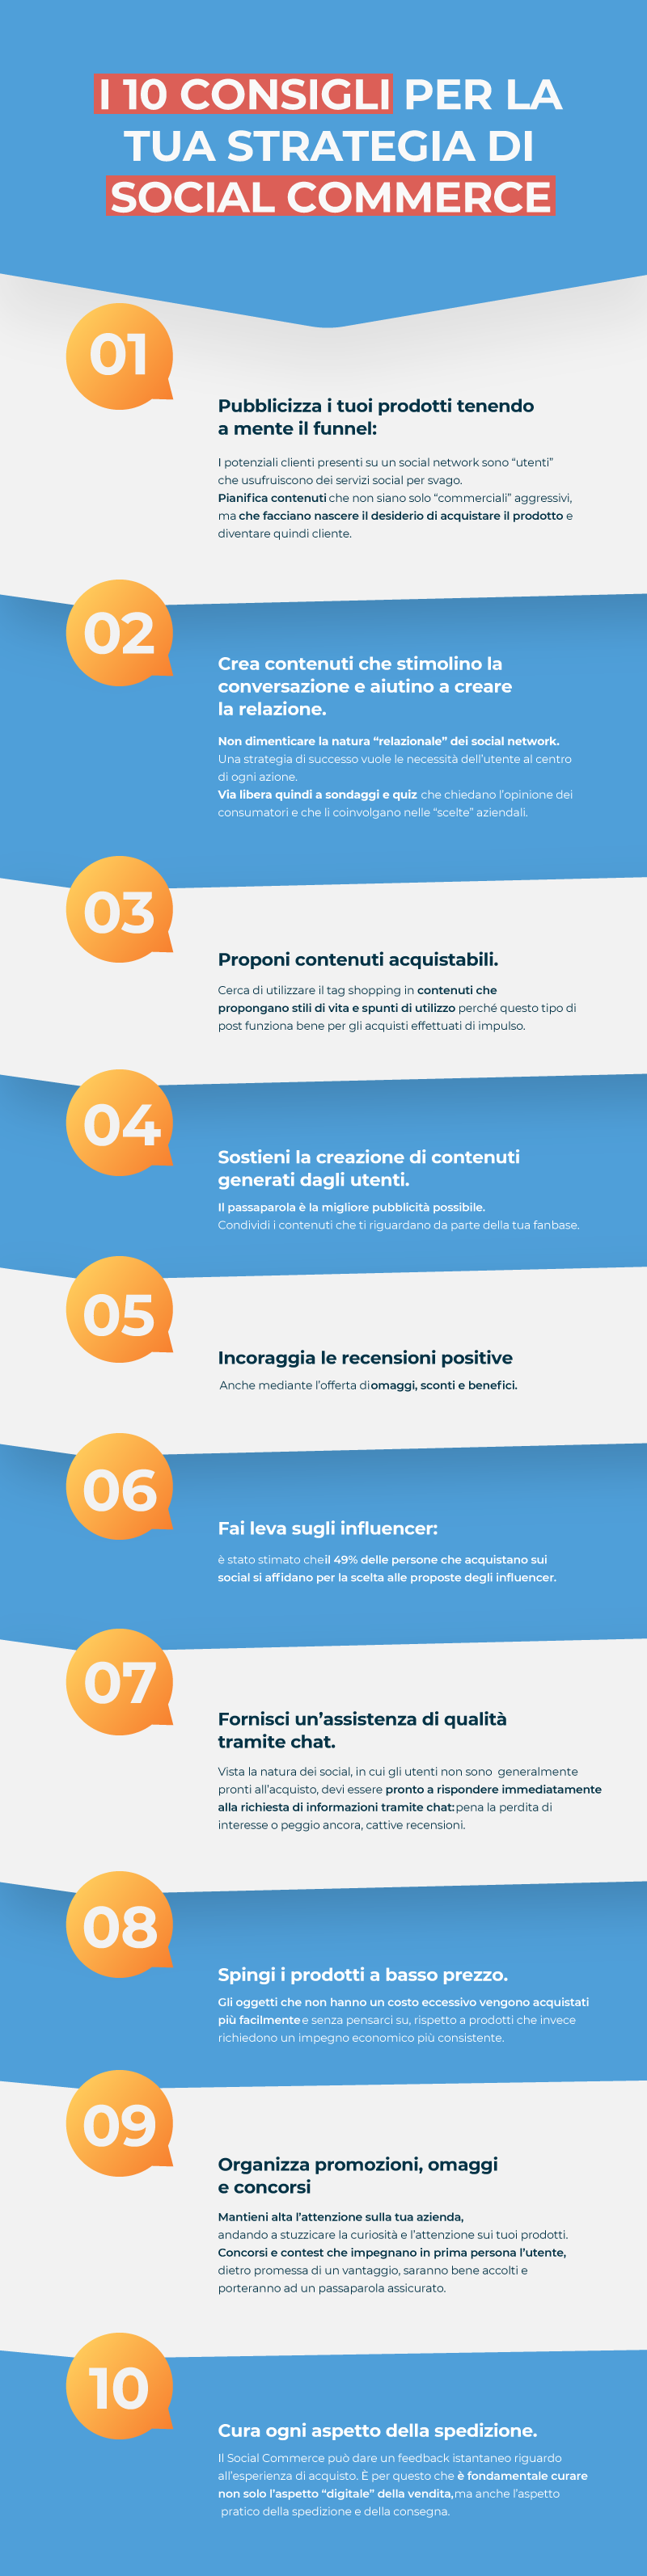 Infografica i 10 consigli per il social commerce